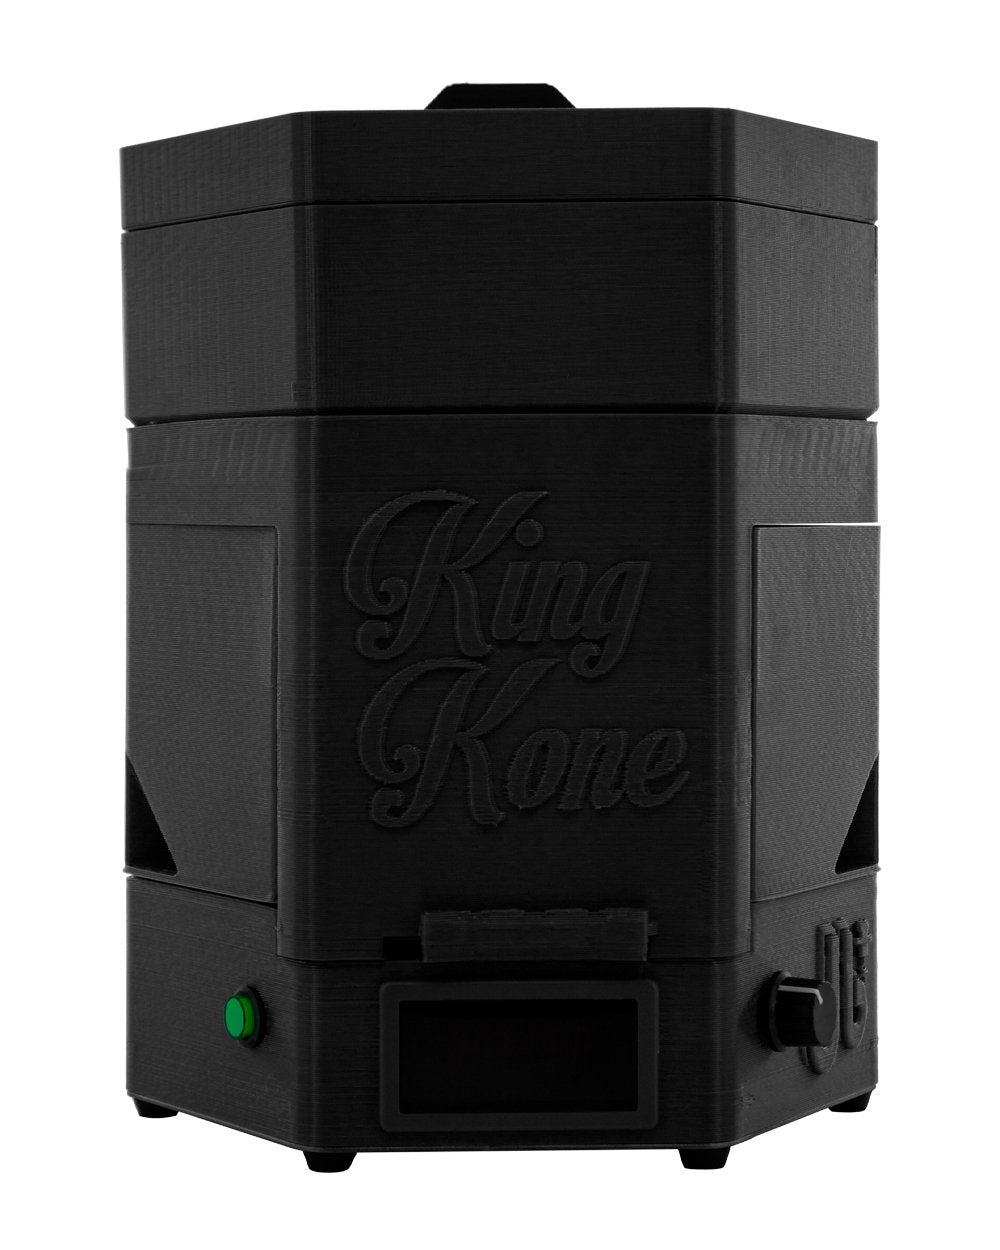 KING KONE | Black Vibration Pre-Rolled Cones Filling Machine 84/98/109mm | Fill 169 Cones Per Run - 1